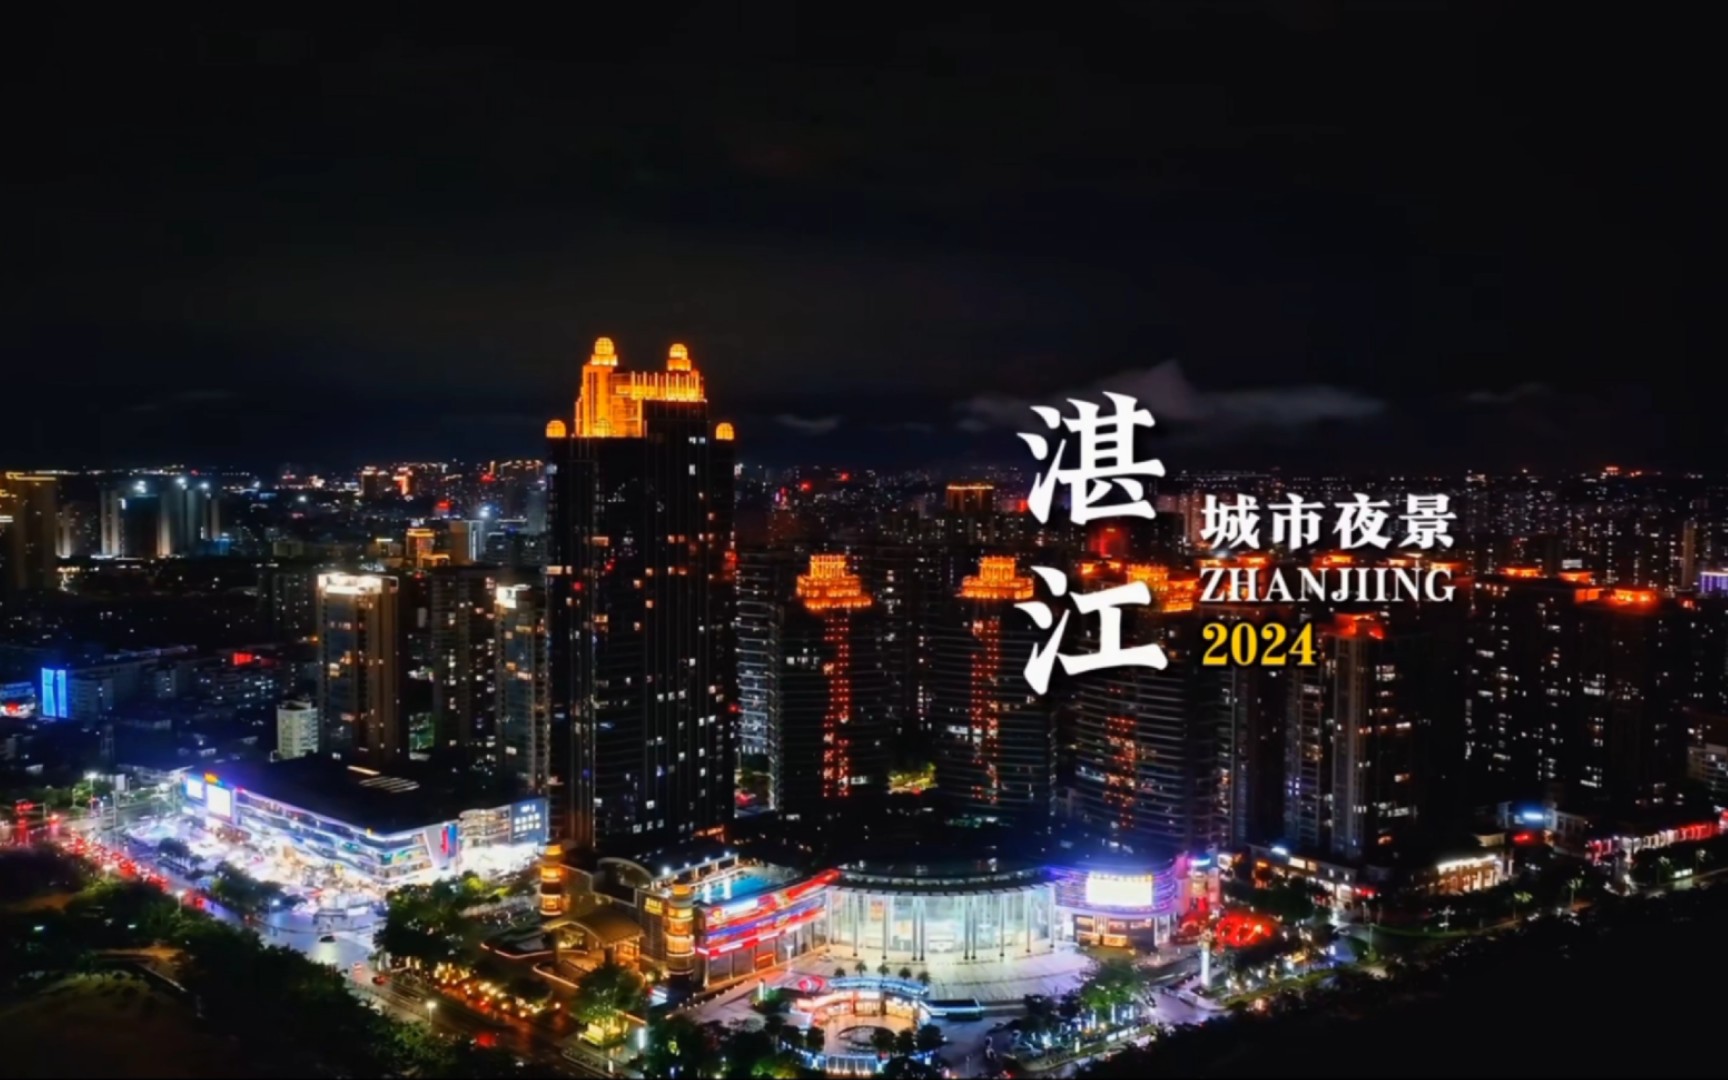 带你一起去欣赏湛江城市夜景!